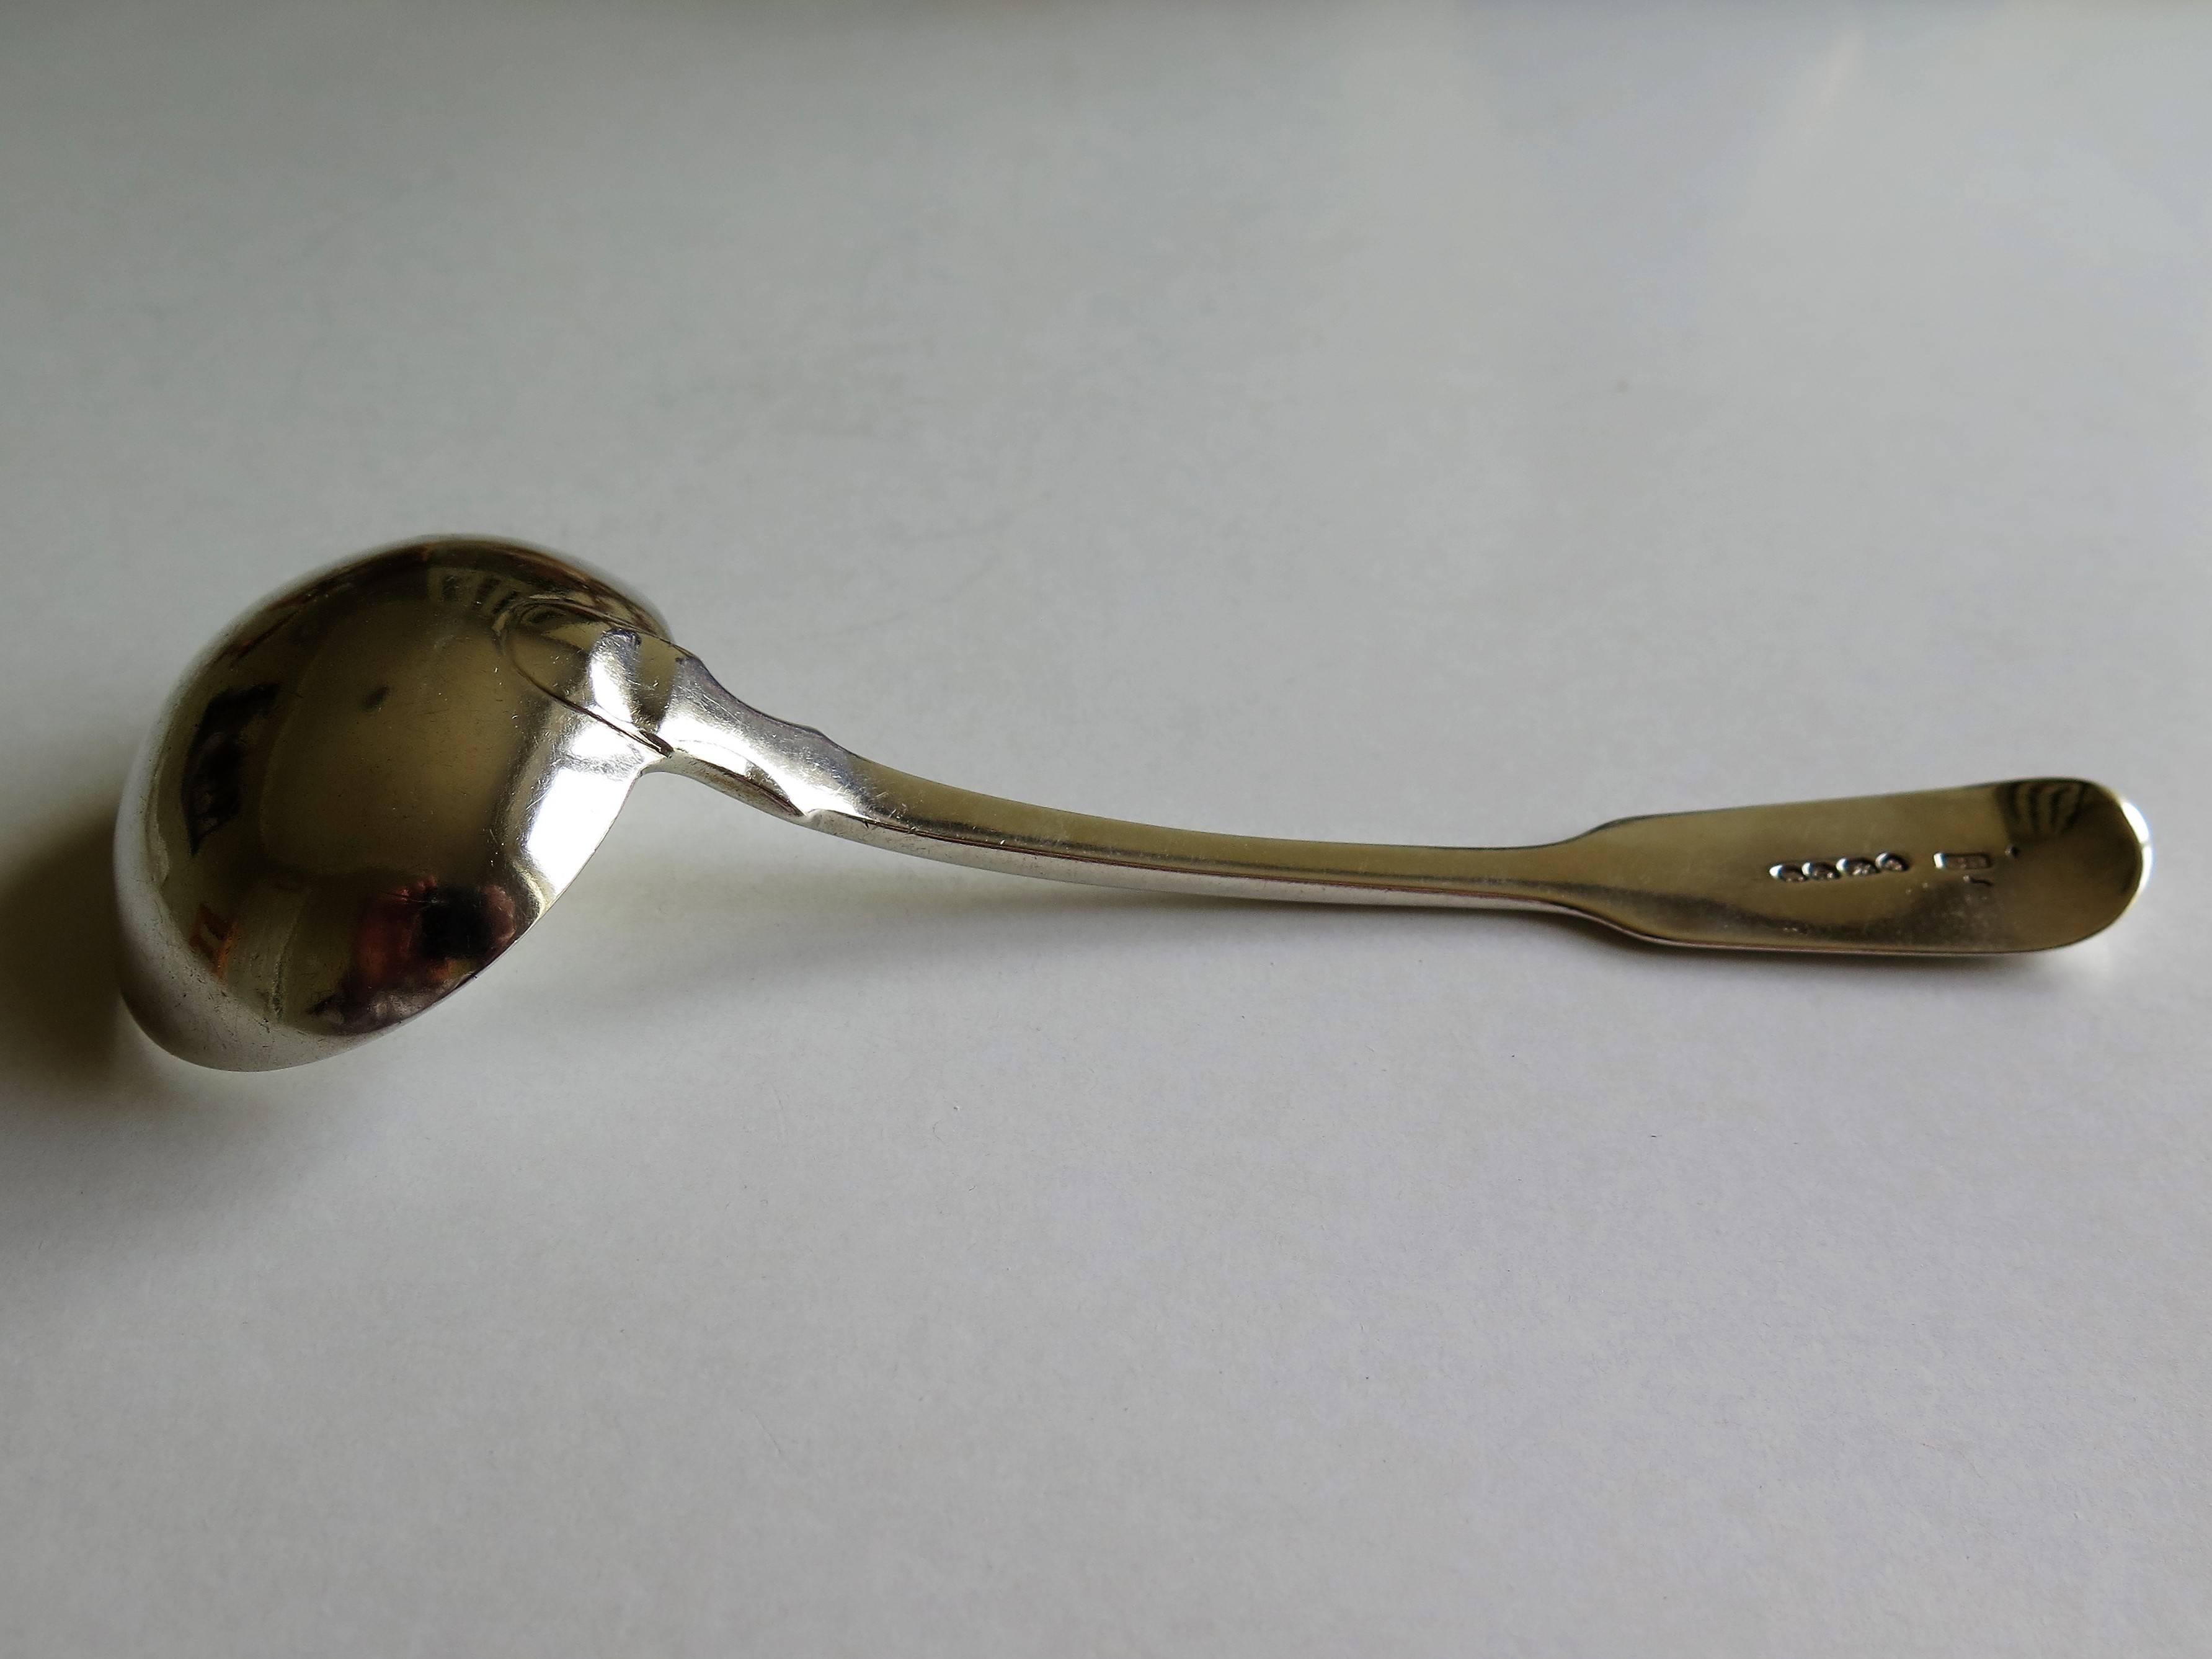 fiddleback spoon